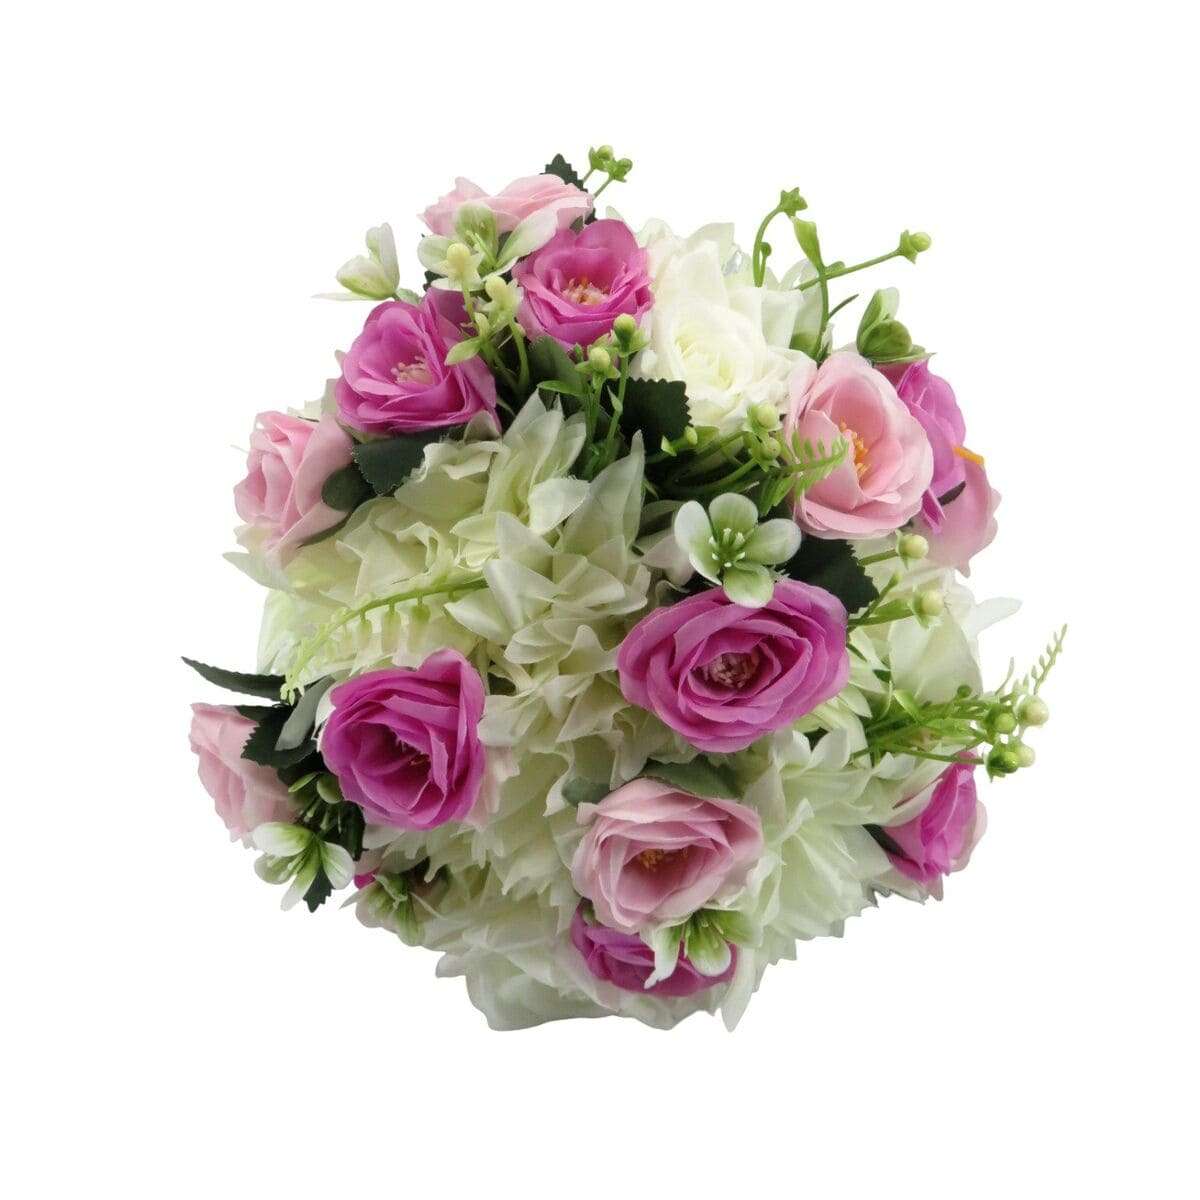 Buchet mireasanasa cu flori de matase, verde, roz & alb – ILIF406011 (9)